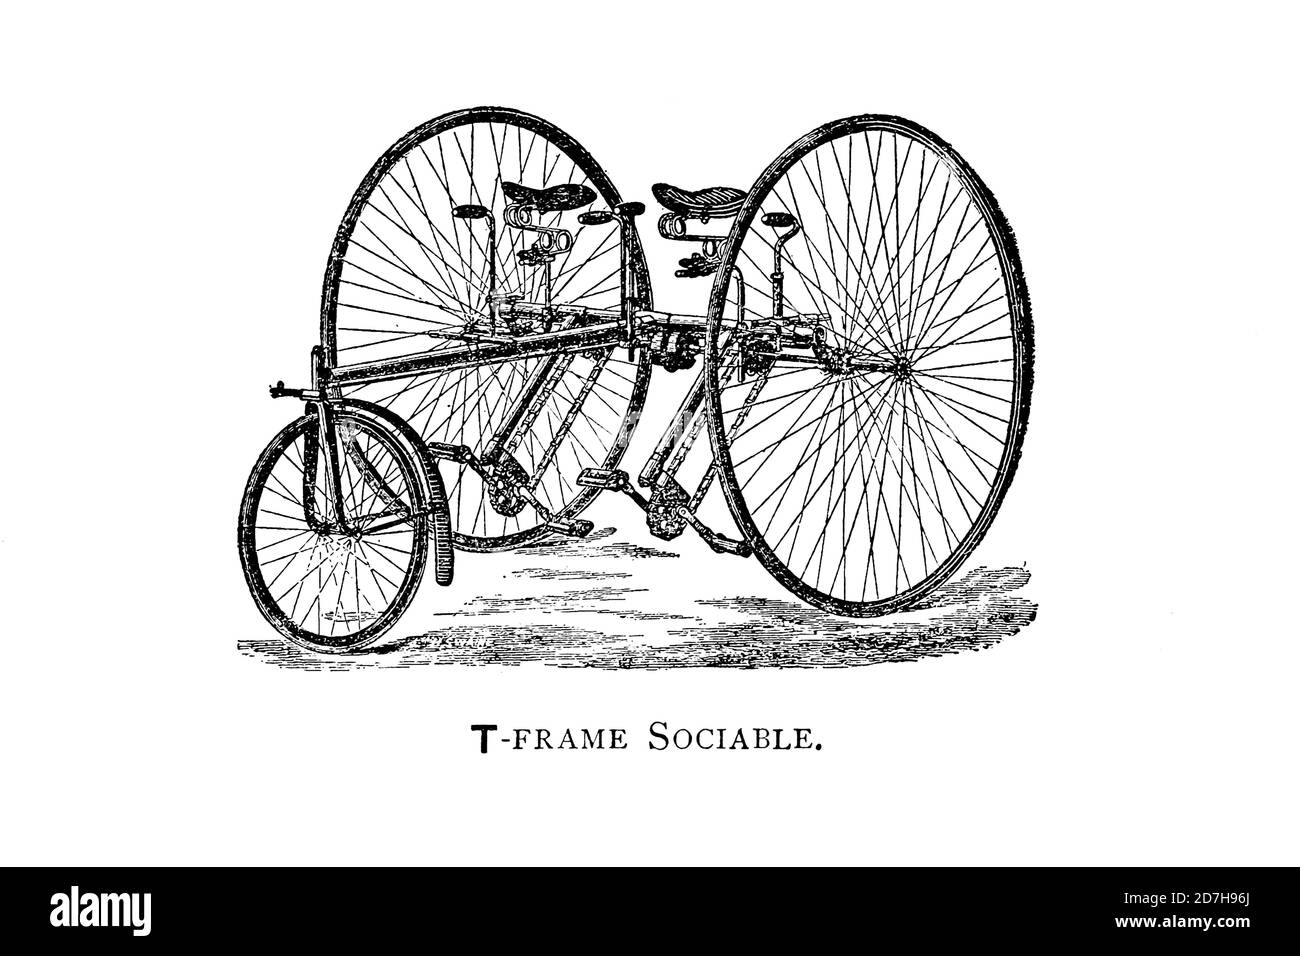 Tricycle en tandem sociable à châssis en T de Wheeling, un manuel indispensable pour les cyclistes, avec plus de deux cents illustrations de porter, LUT Banque D'Images